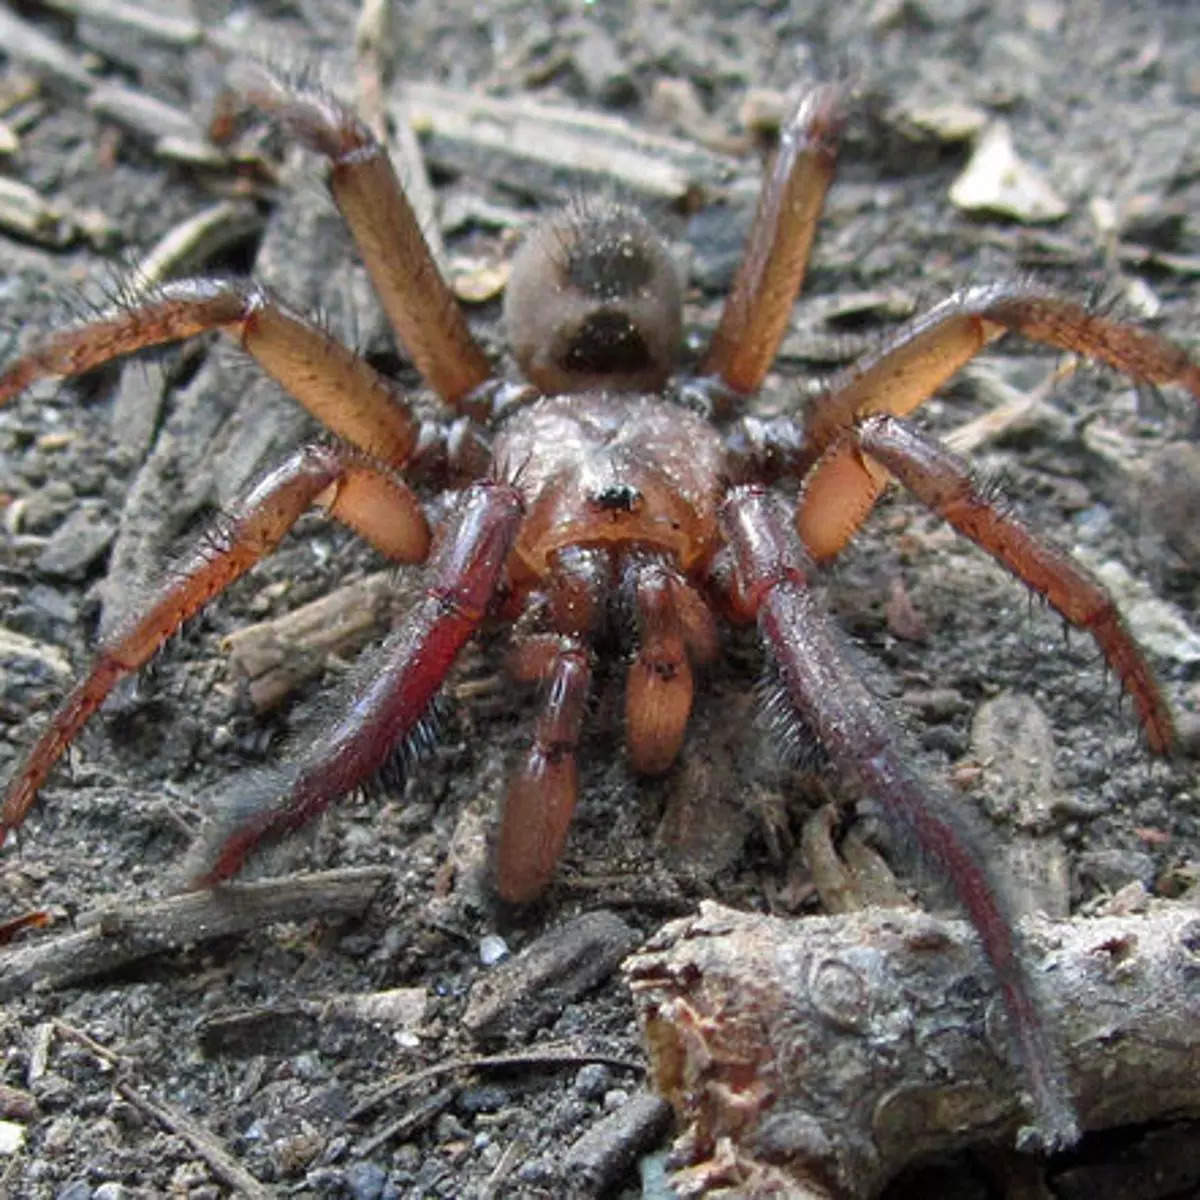 Giant species of Trapdoor spider spotted in Australia's Queensland